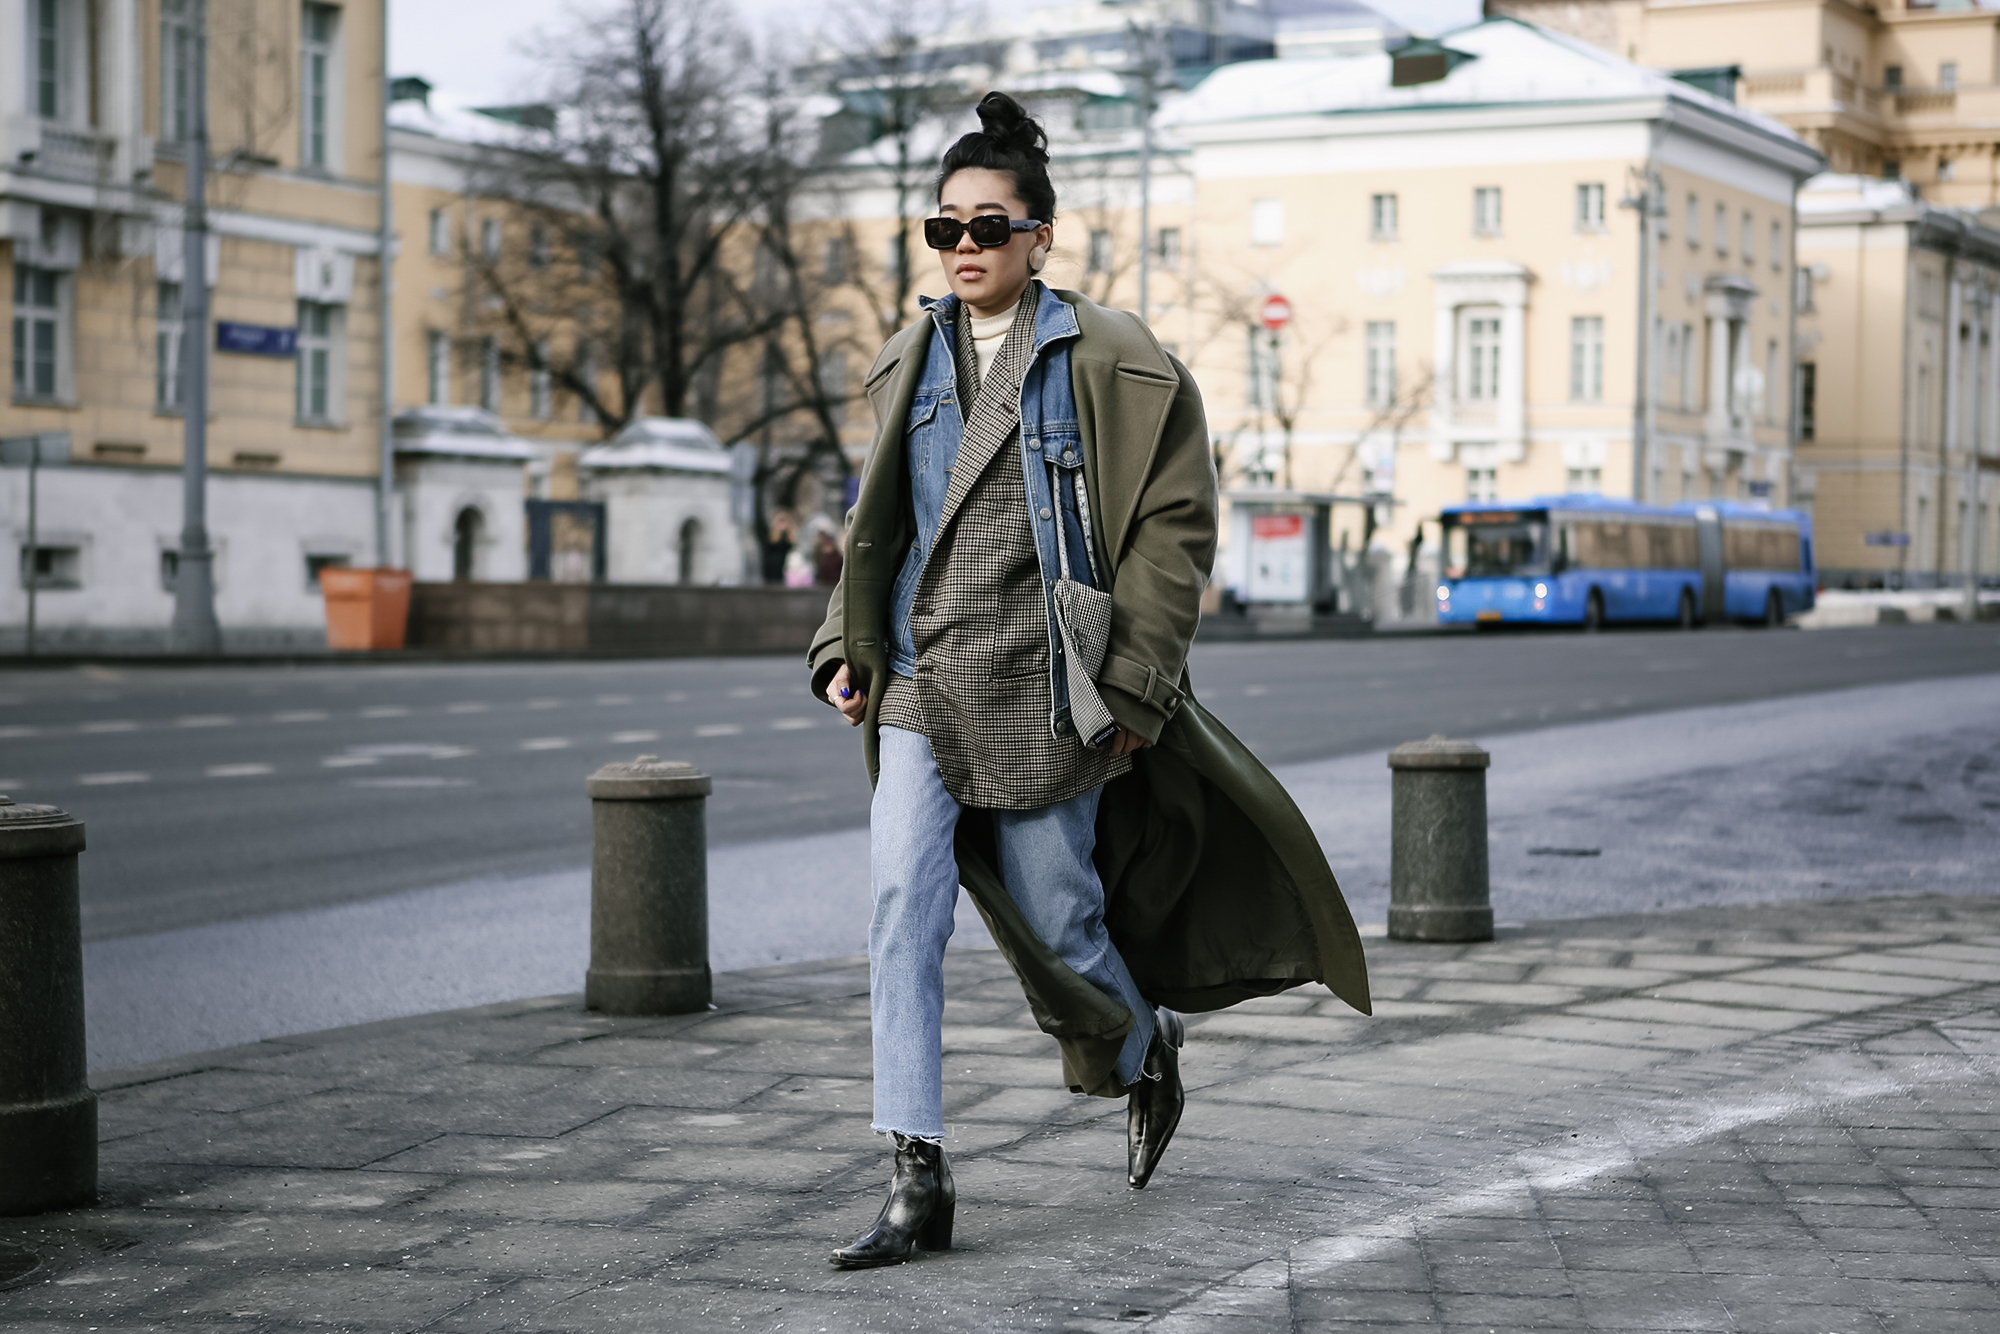 Как модно одеться на неделю моды: streetstyle c MBFWRussia